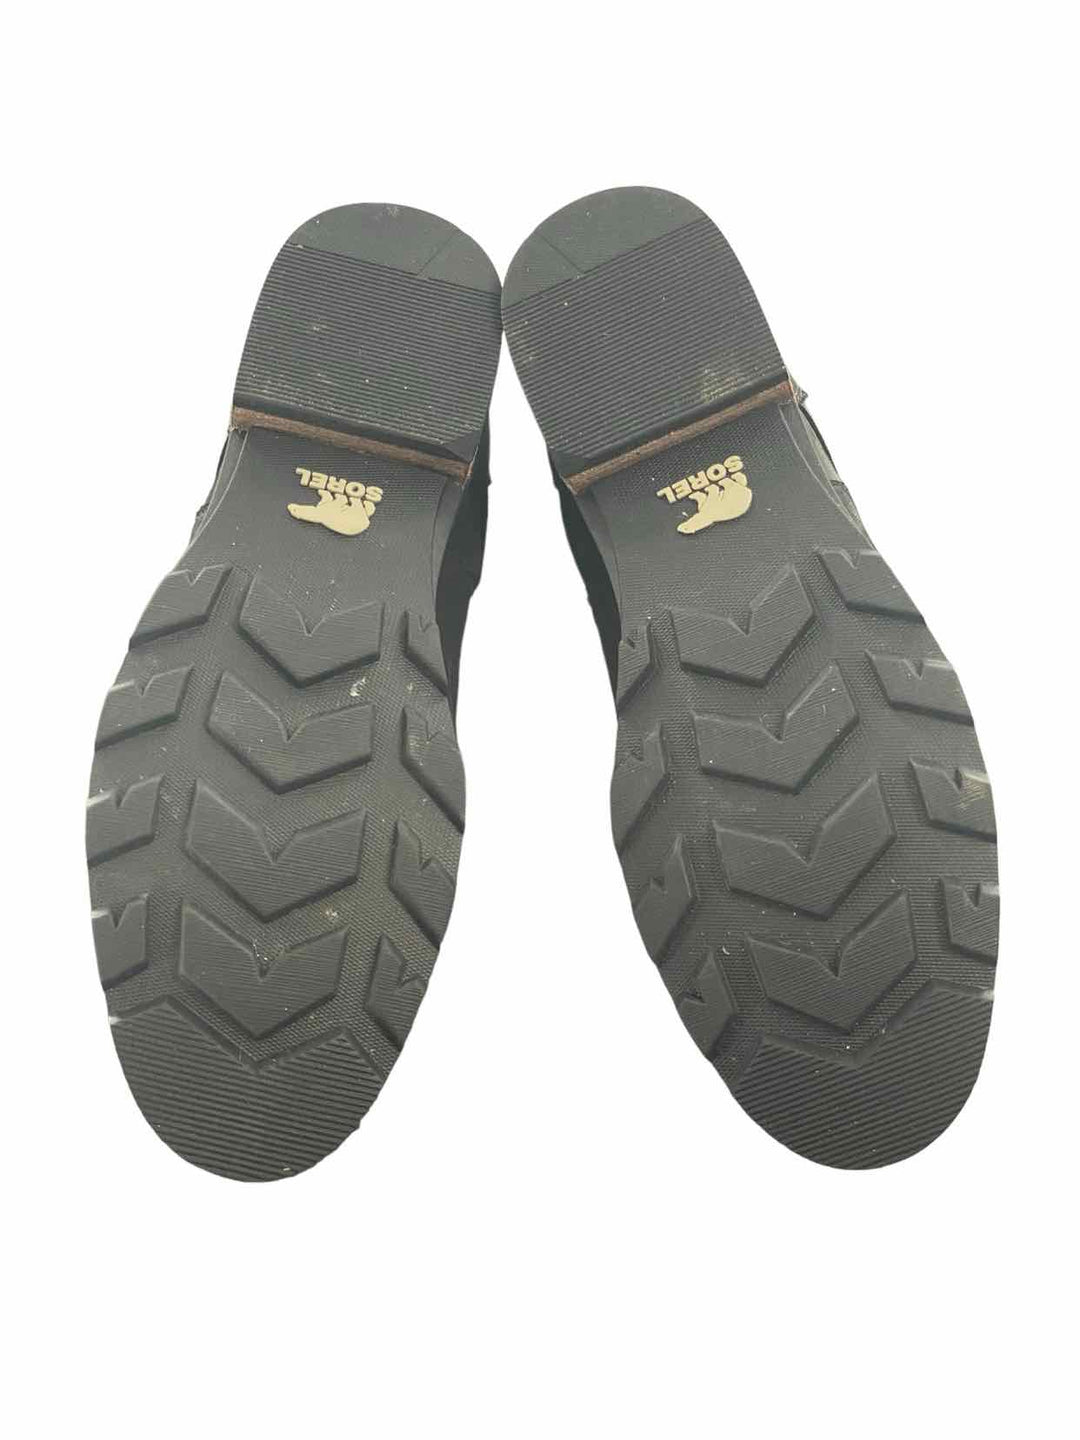 Sorel Shoe Size 7 Black Boots(Ankle)